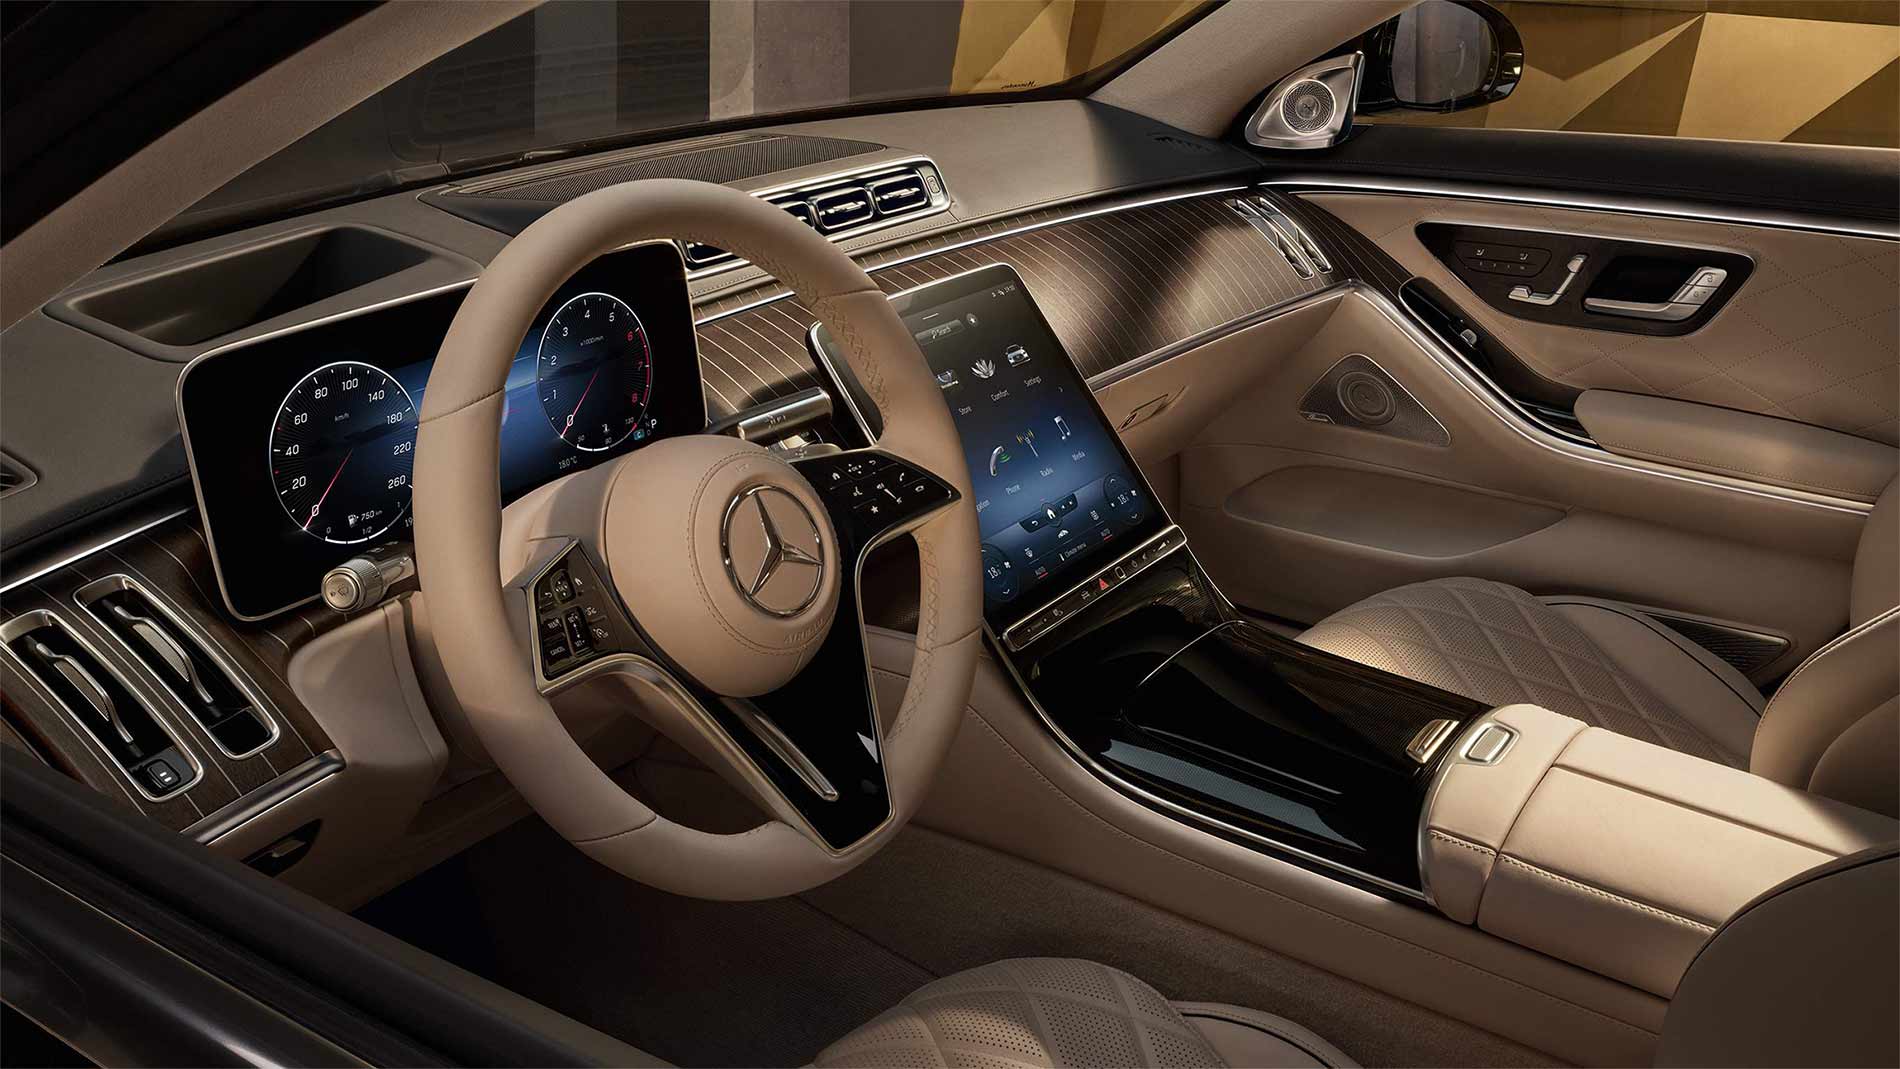 Diseño interior rustico de la Clase S Sedan de Mercedes-Benz